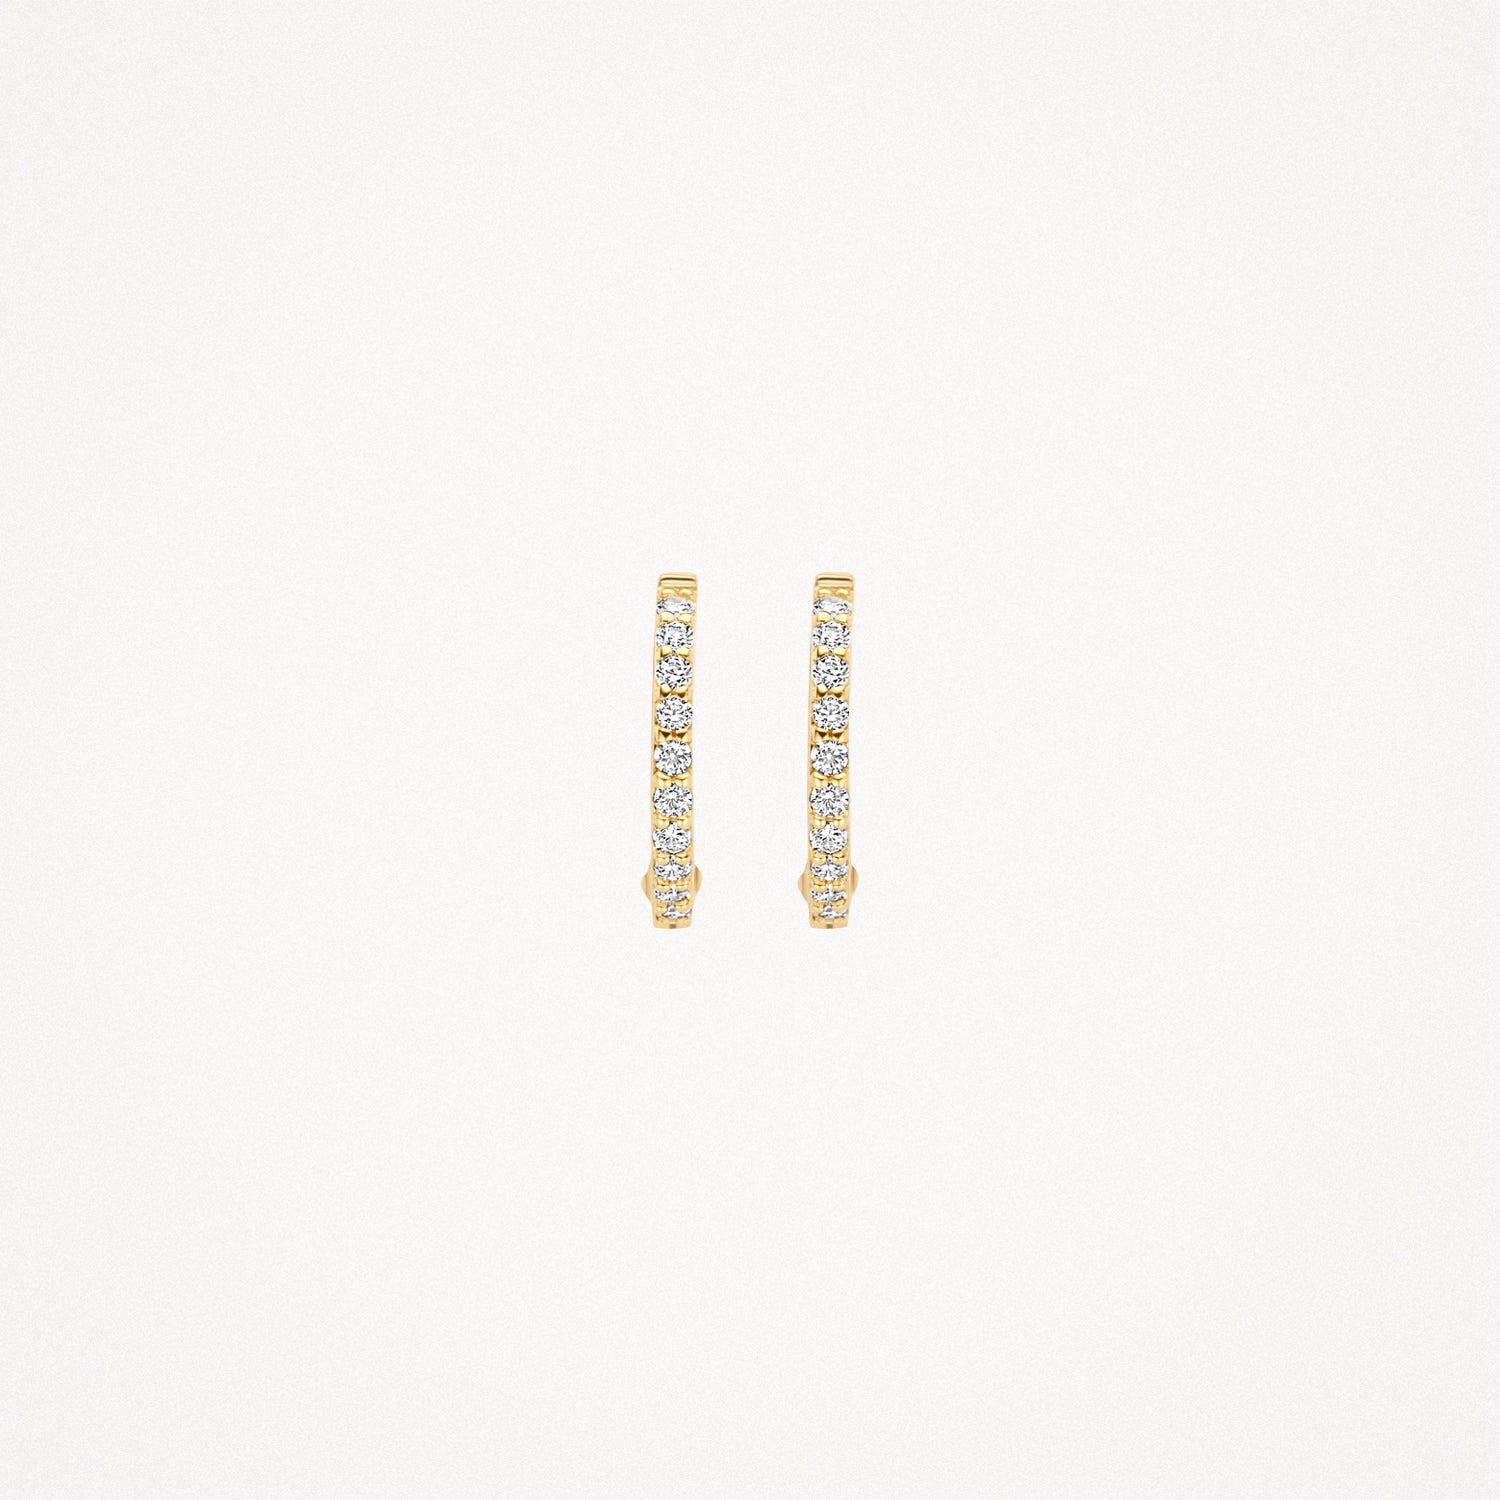 Earrings 7268YZI - 14k Yellow Gold with Zirconia